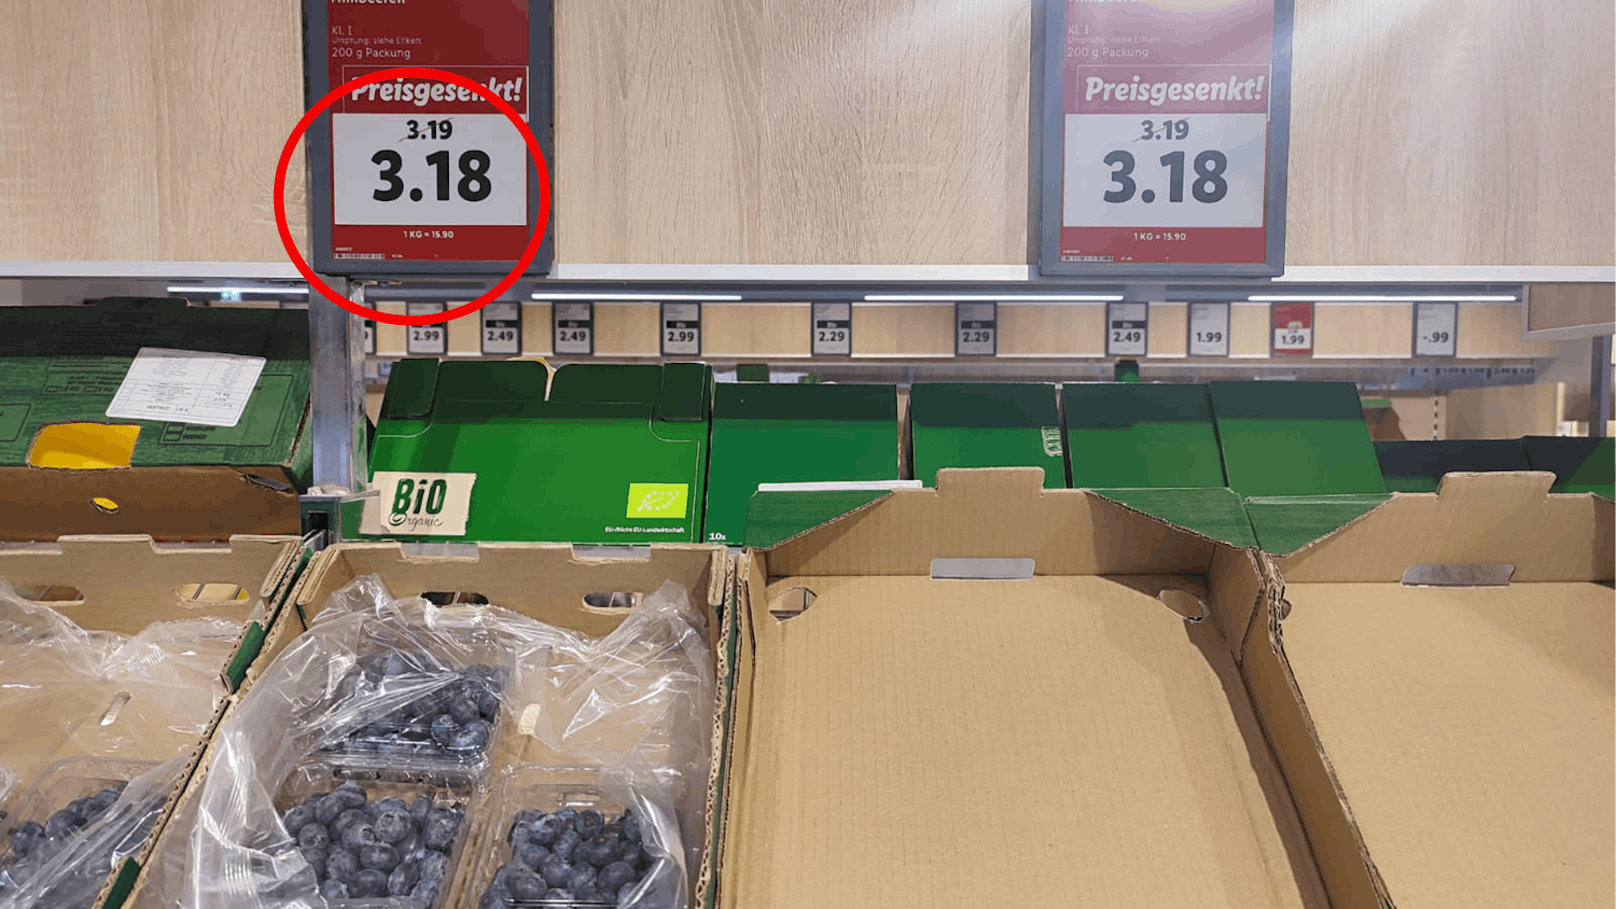 Rabatt-Aktion im Supermarkt, dann wird Wiener sauer